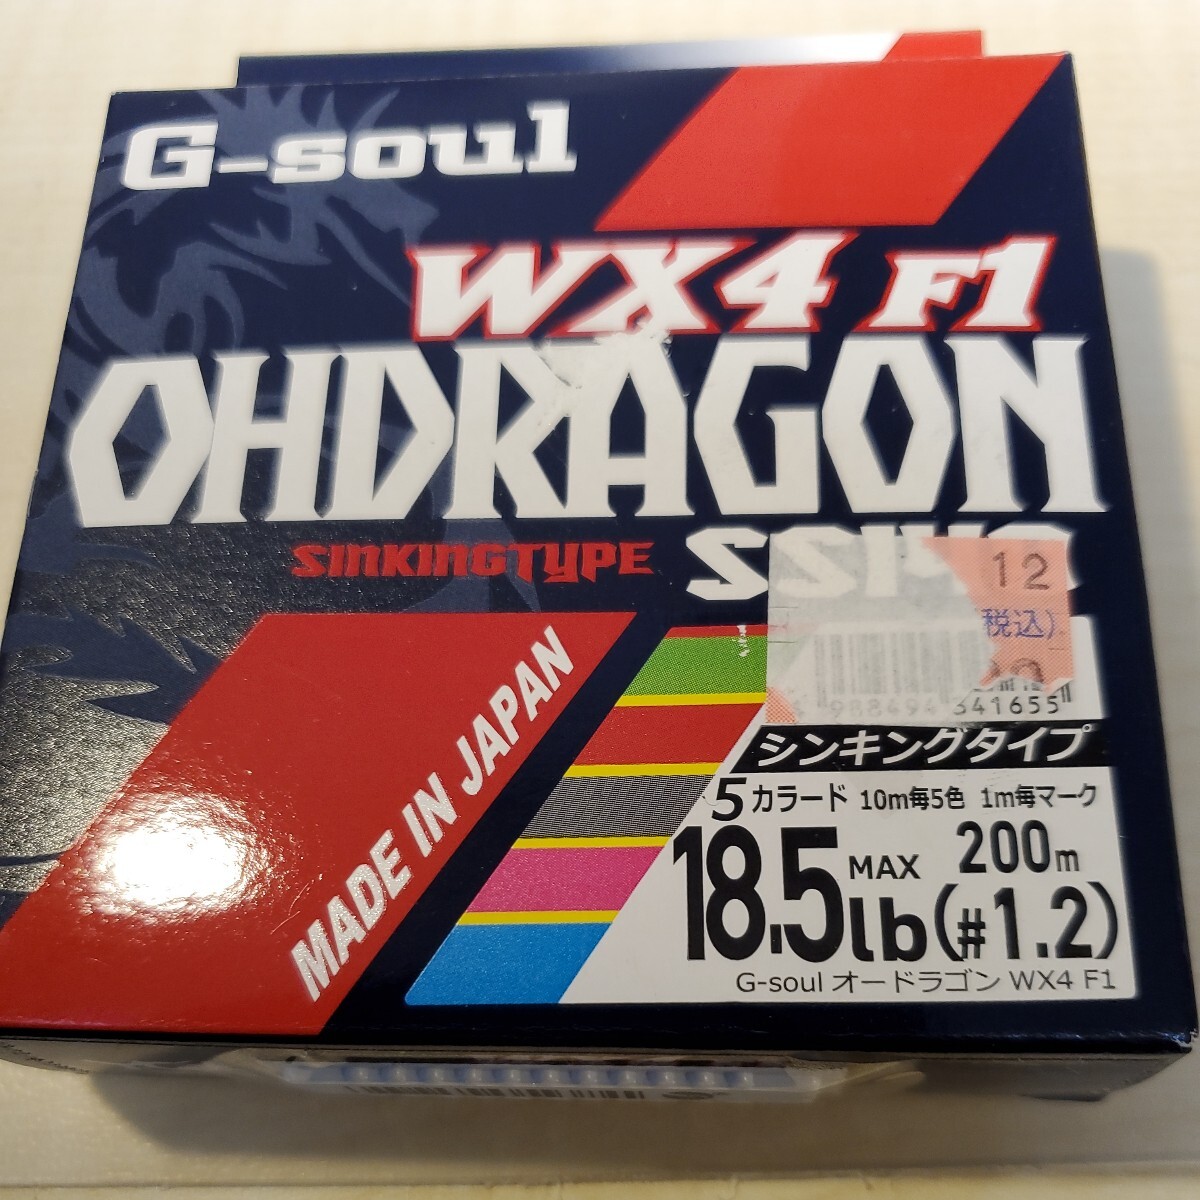  доставка бесплатно 　 неиспользуемый 　YGK...　WX4 F1 ... дракон  　1.2 200m 18.5lb ...PE 5 цвет 